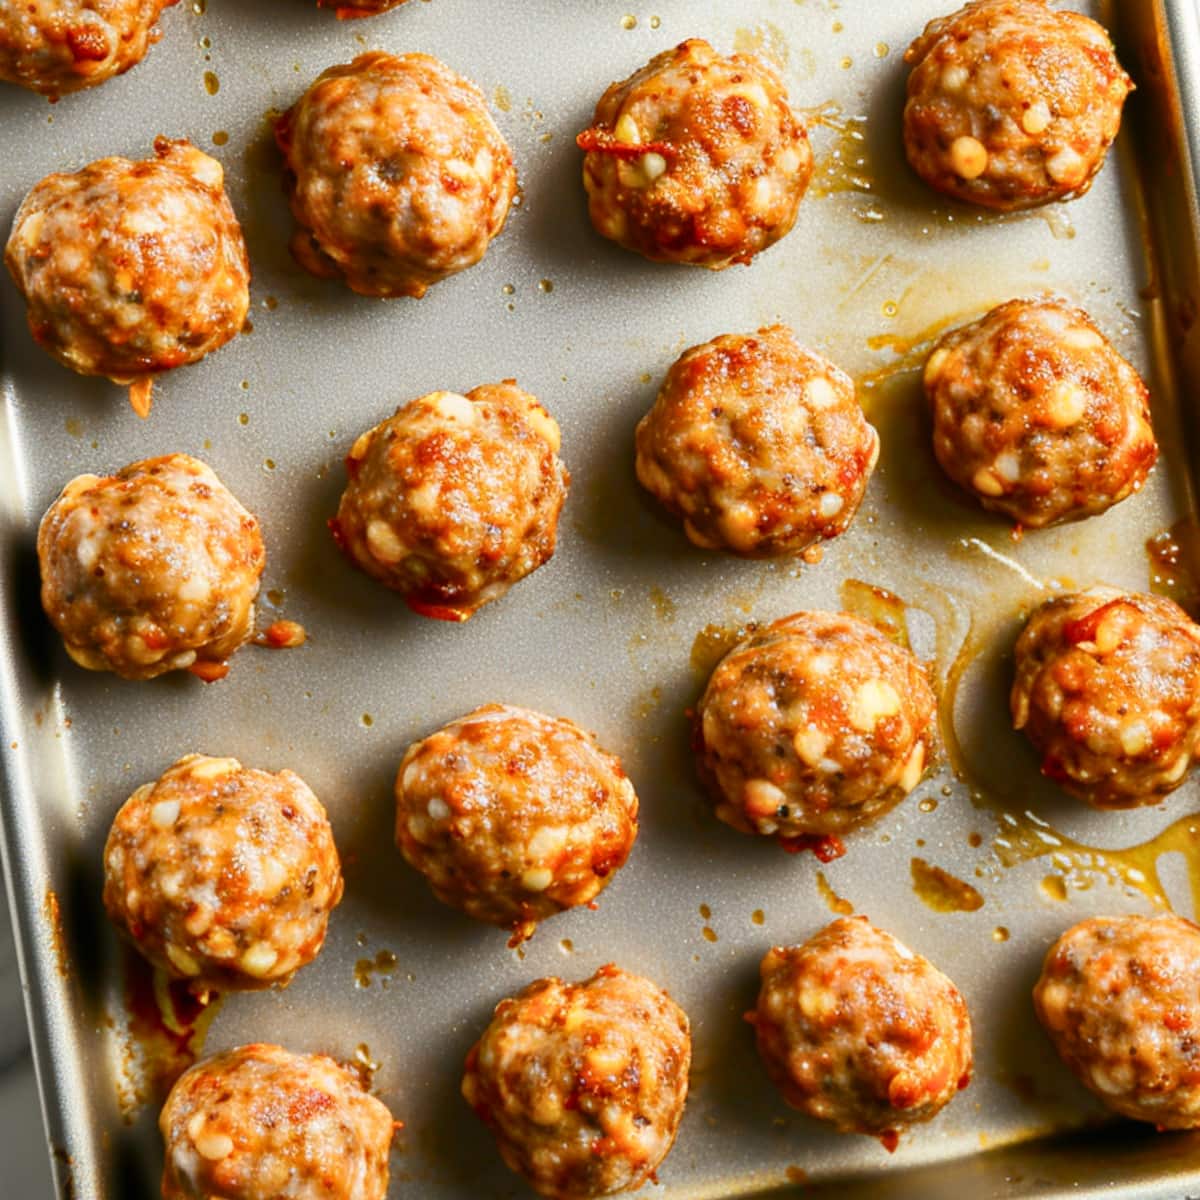 Raw sausage balls arranged in a sheet pan,